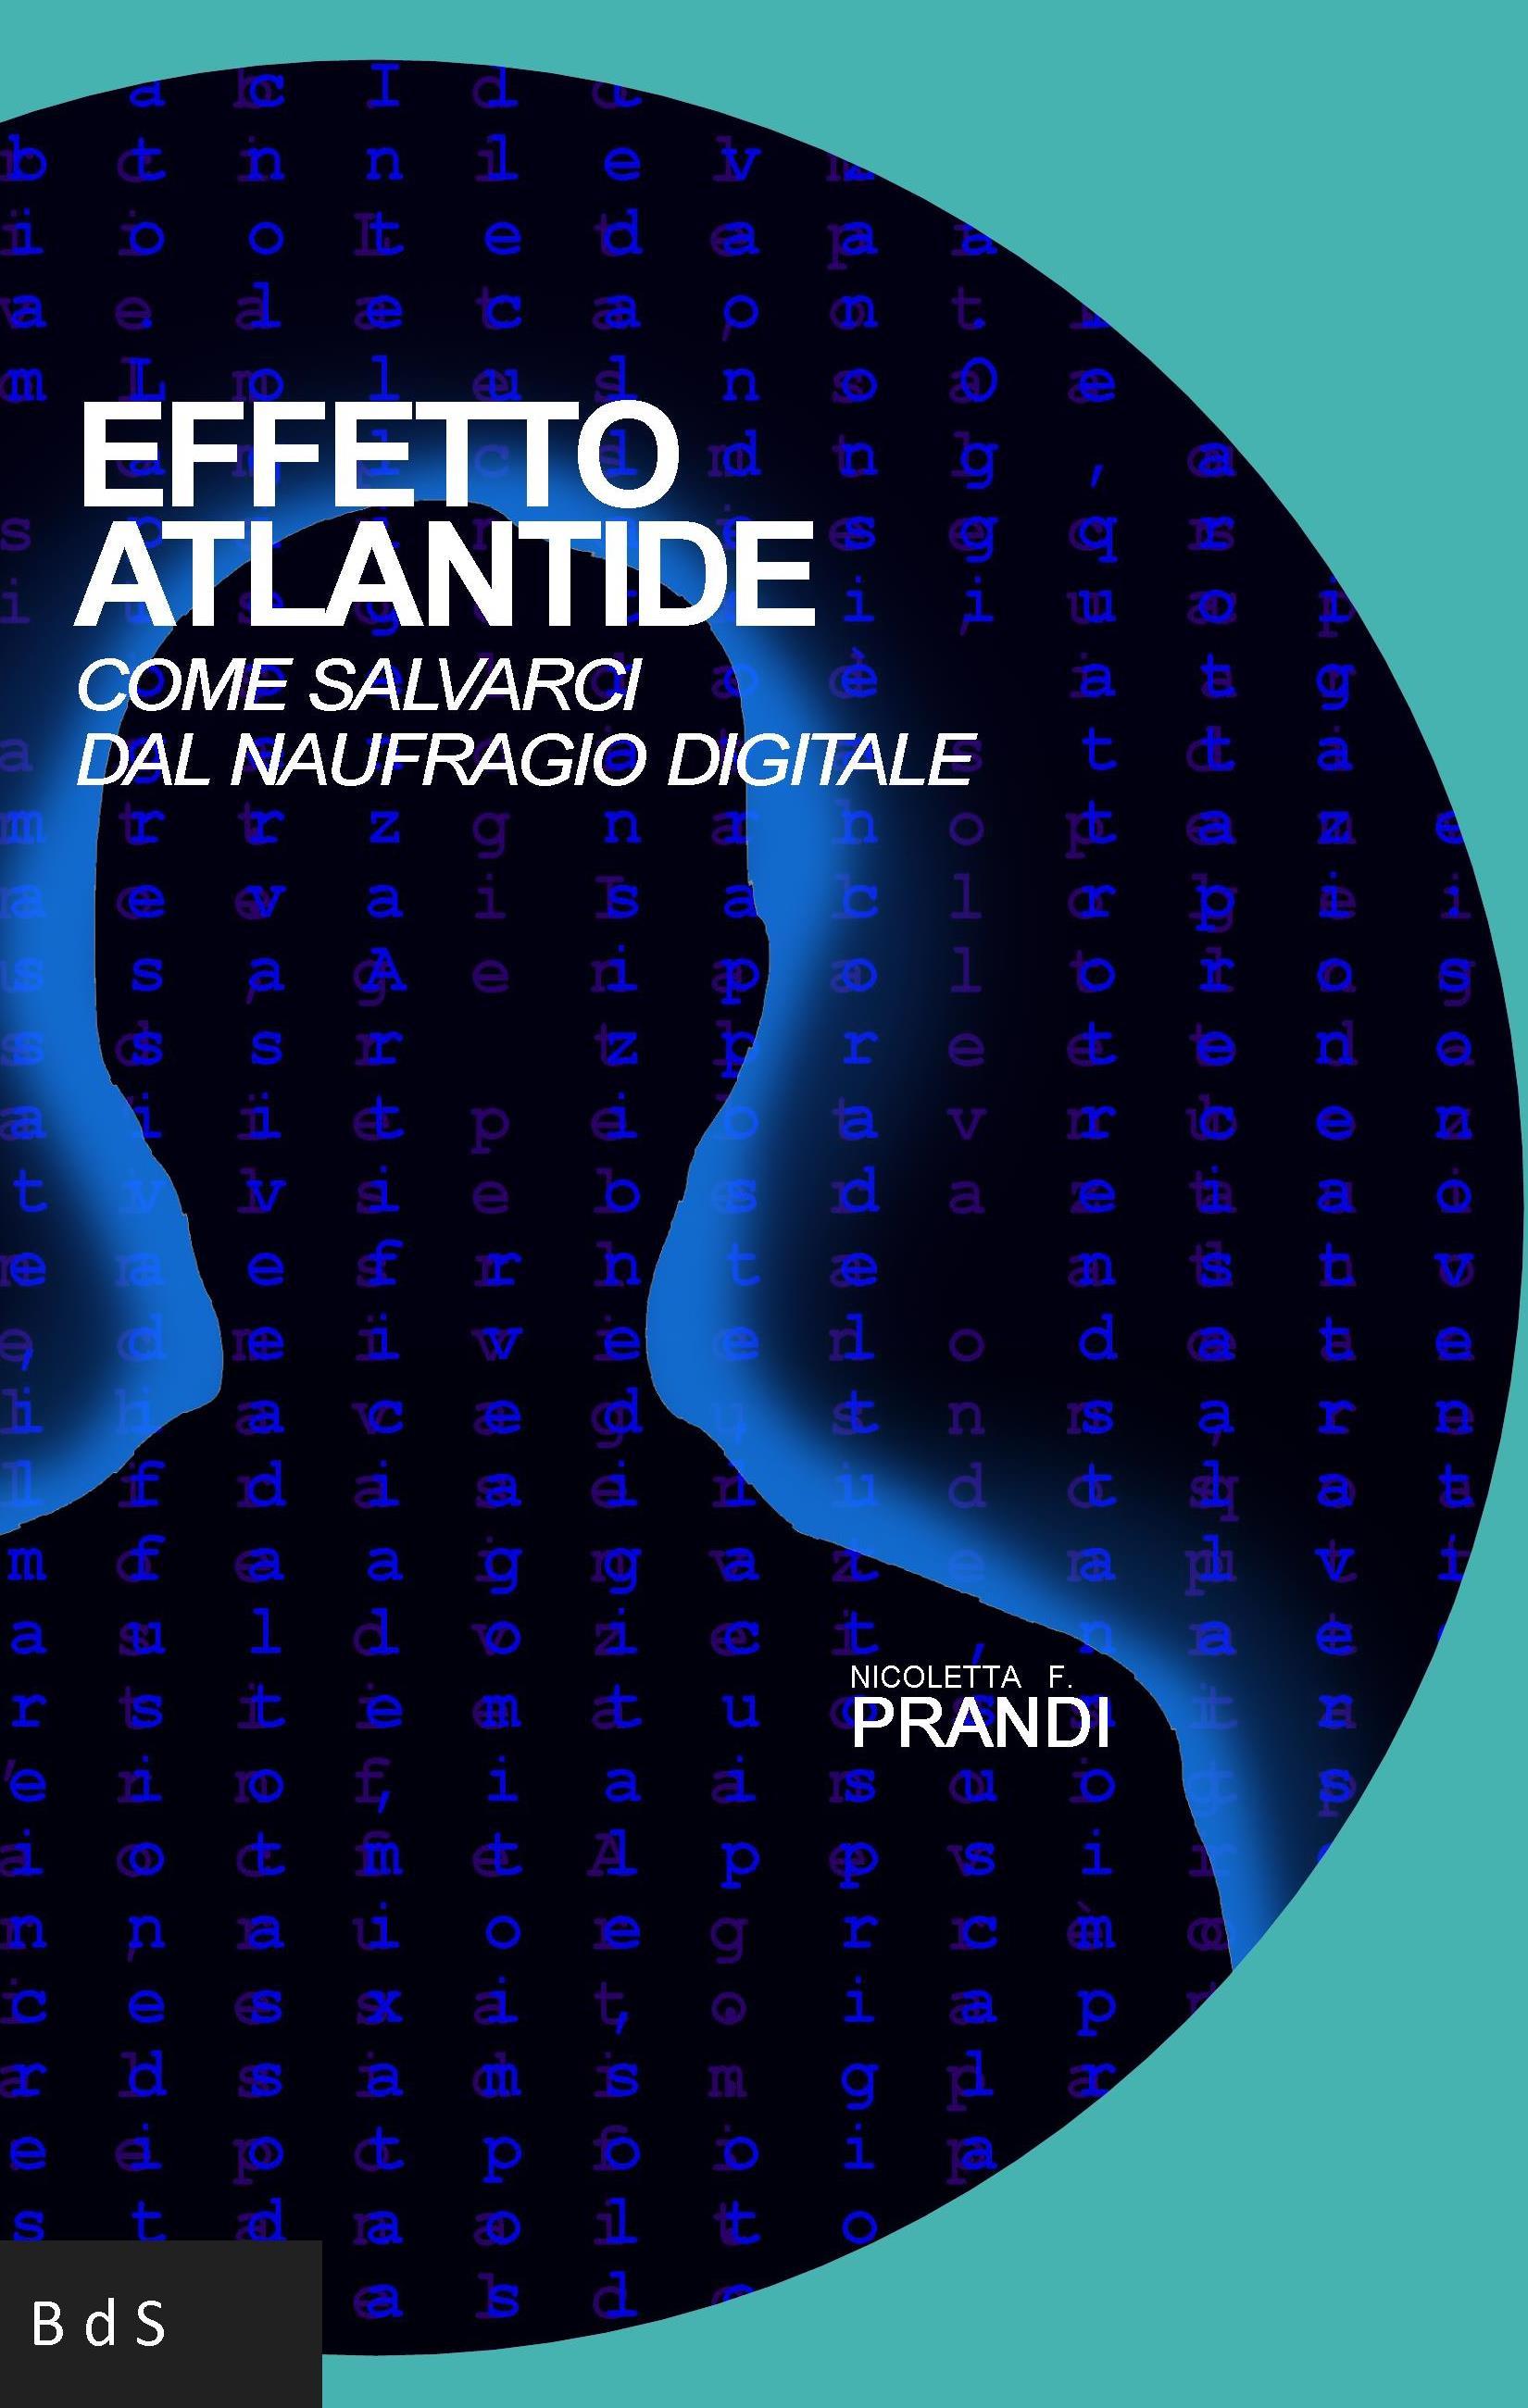 Esce oggi "Effetto Atlantide" il nuovo saggio di Nicoletta F. Prandi sull'intelligenza artificiale.